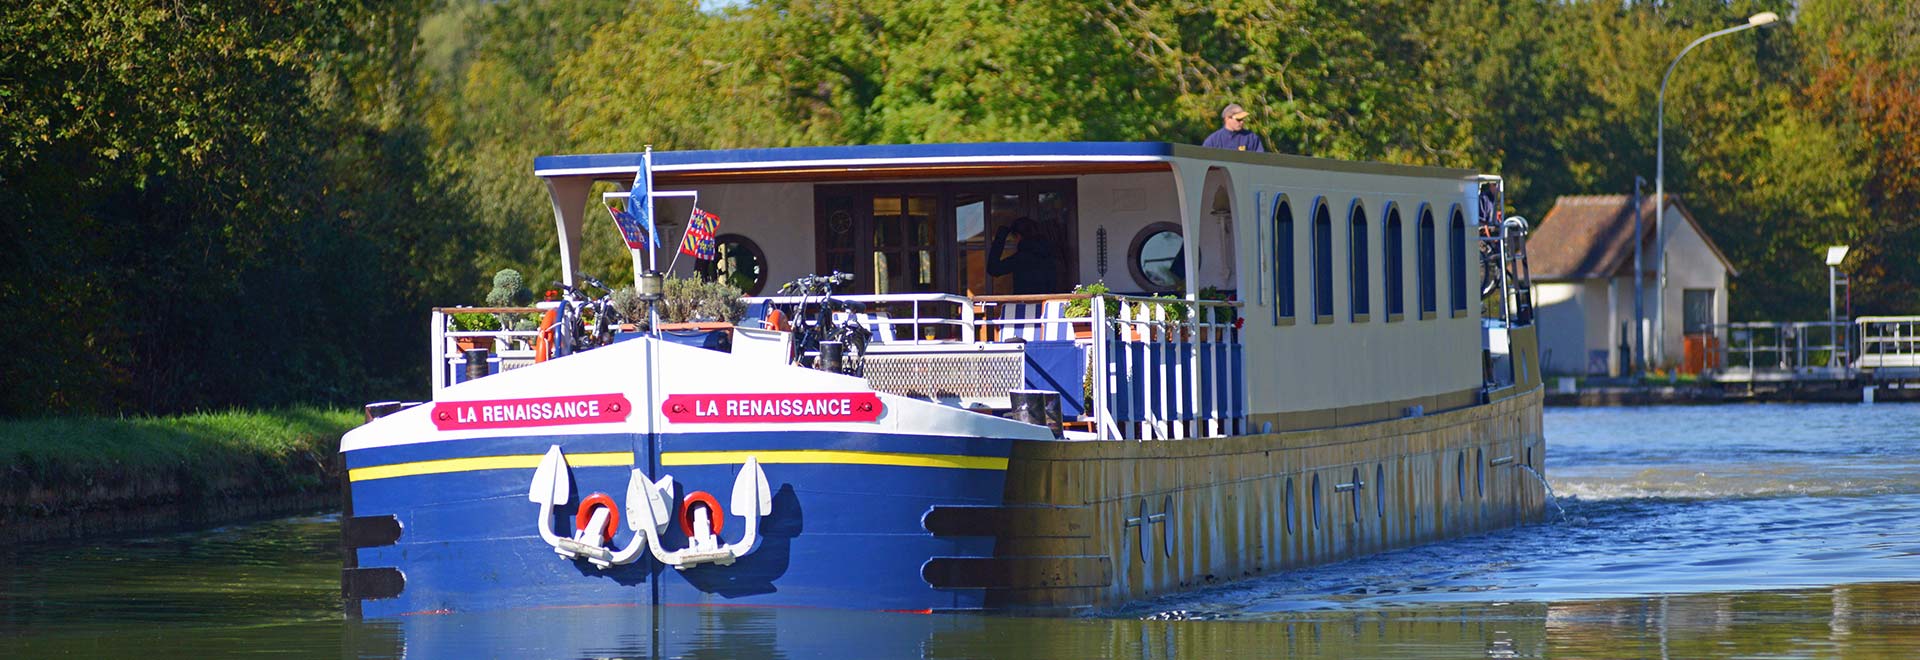 Europe France Renaissance Canal de Briare Barge MH